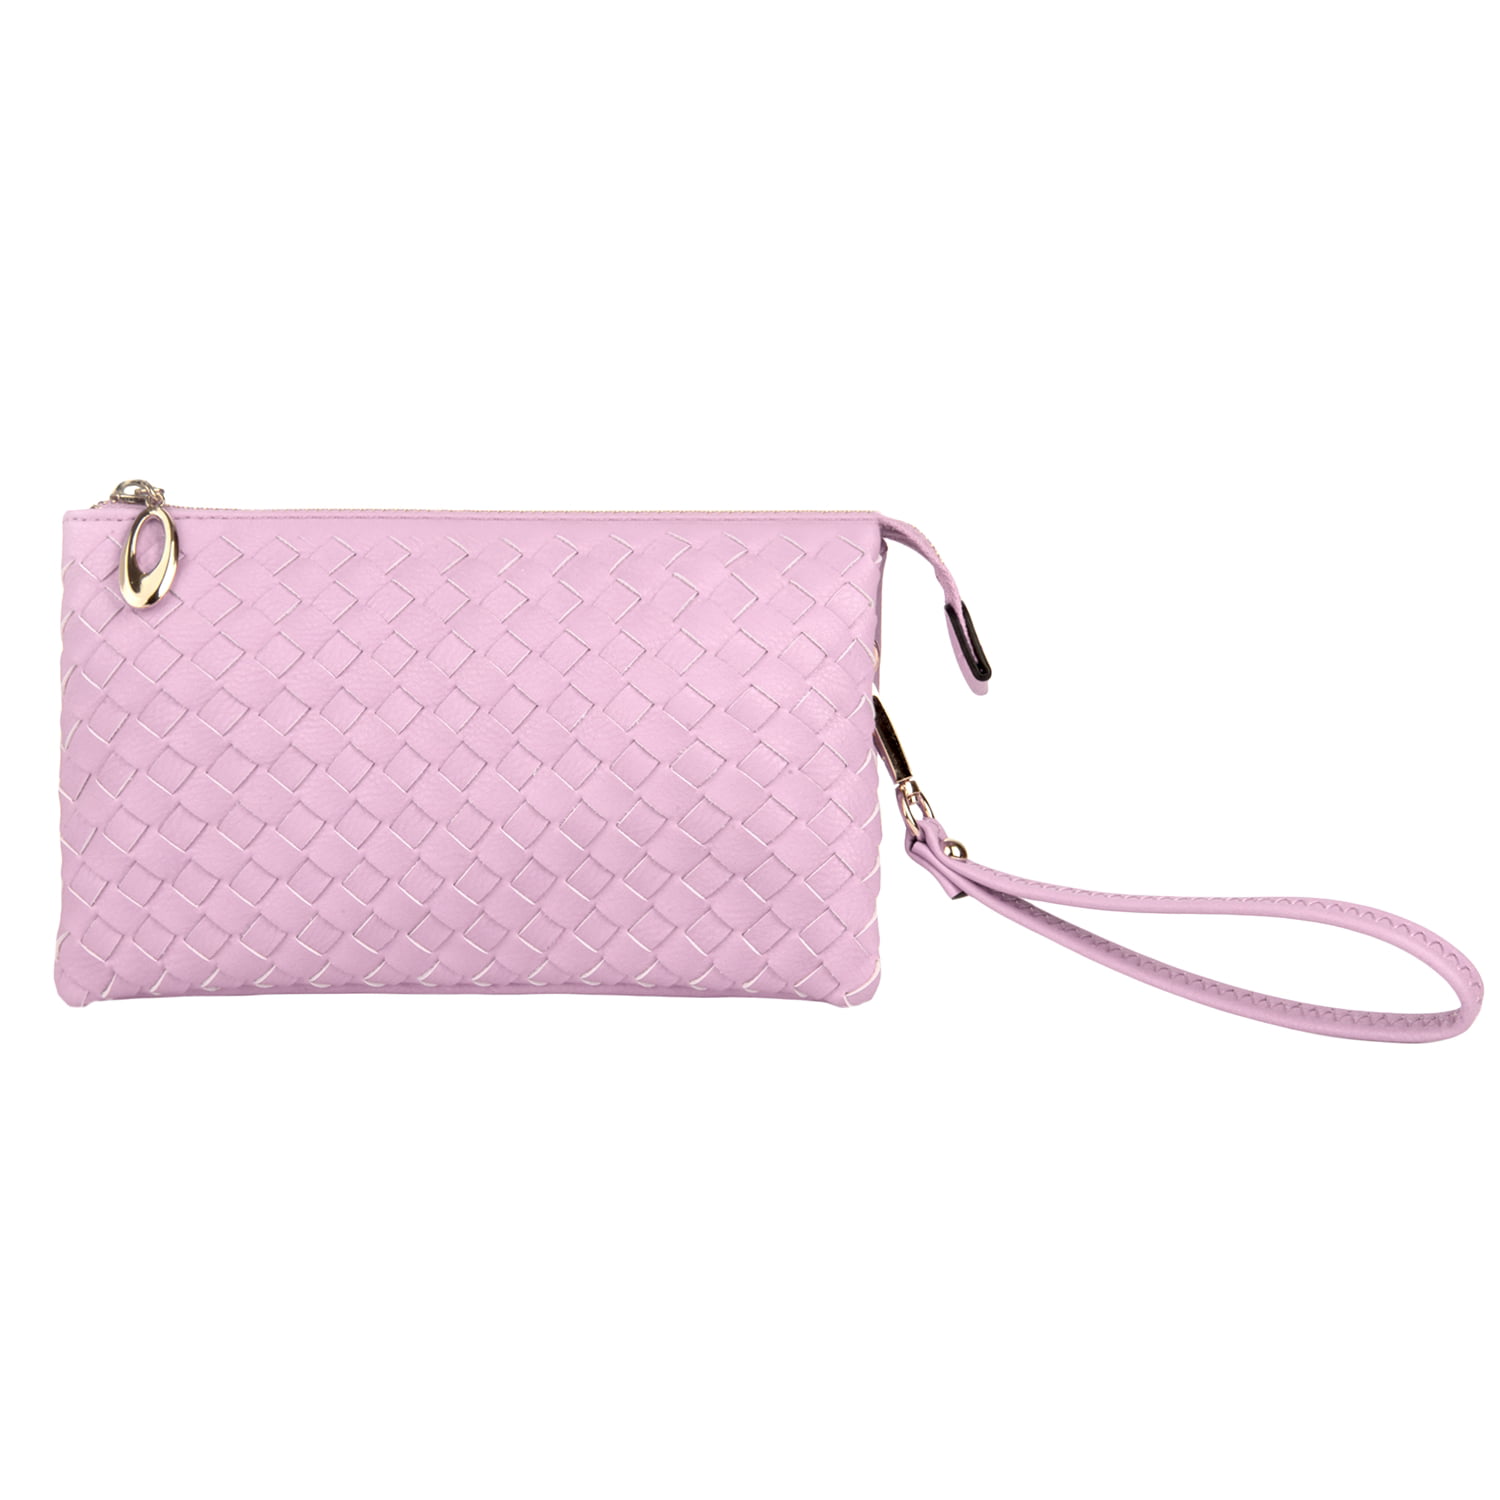 Fold Cloud Pouch Bag Handbag Vintage Chic Fashion Clutch Purse for Women  Dumpling Shoulder Bag - Walmart.com